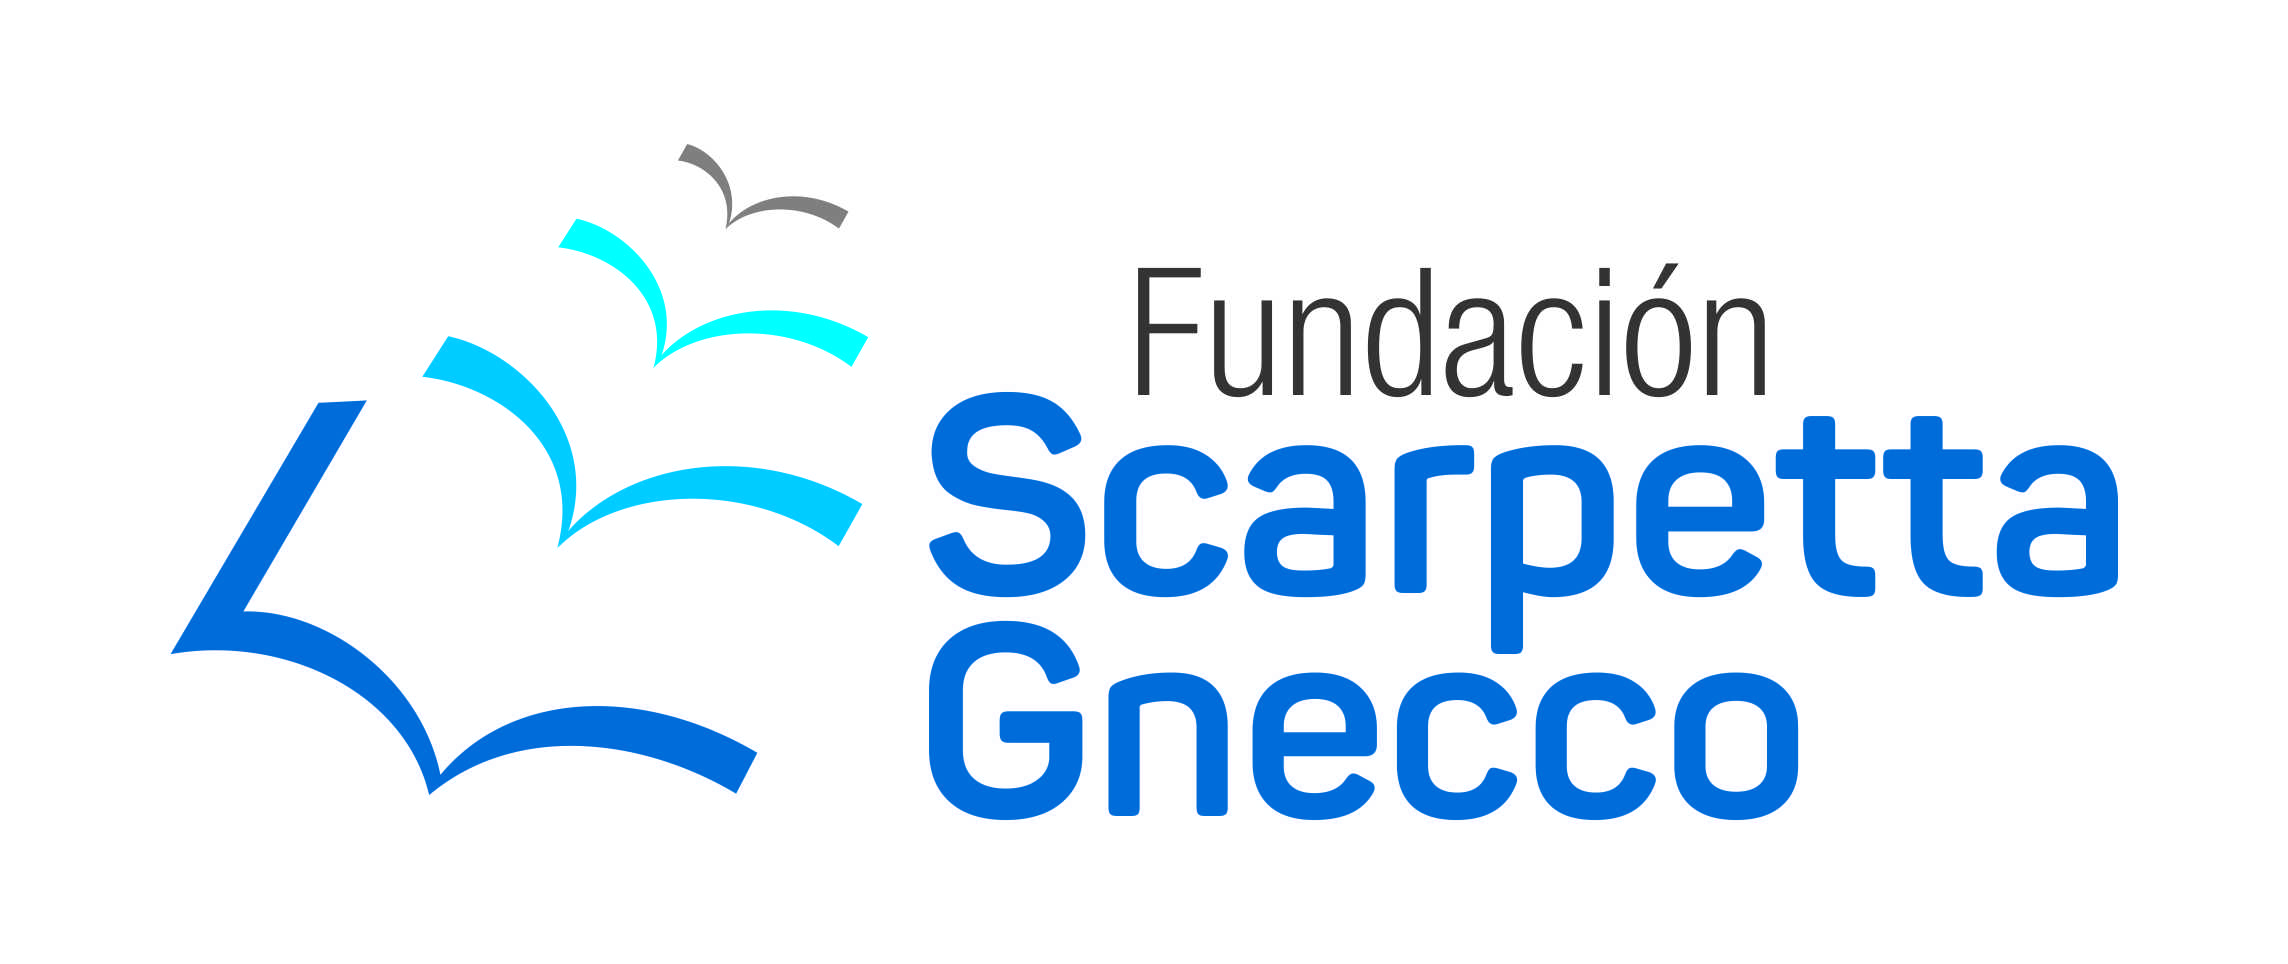 En este momento estás viendo Fundación Scarpetta Gnecco